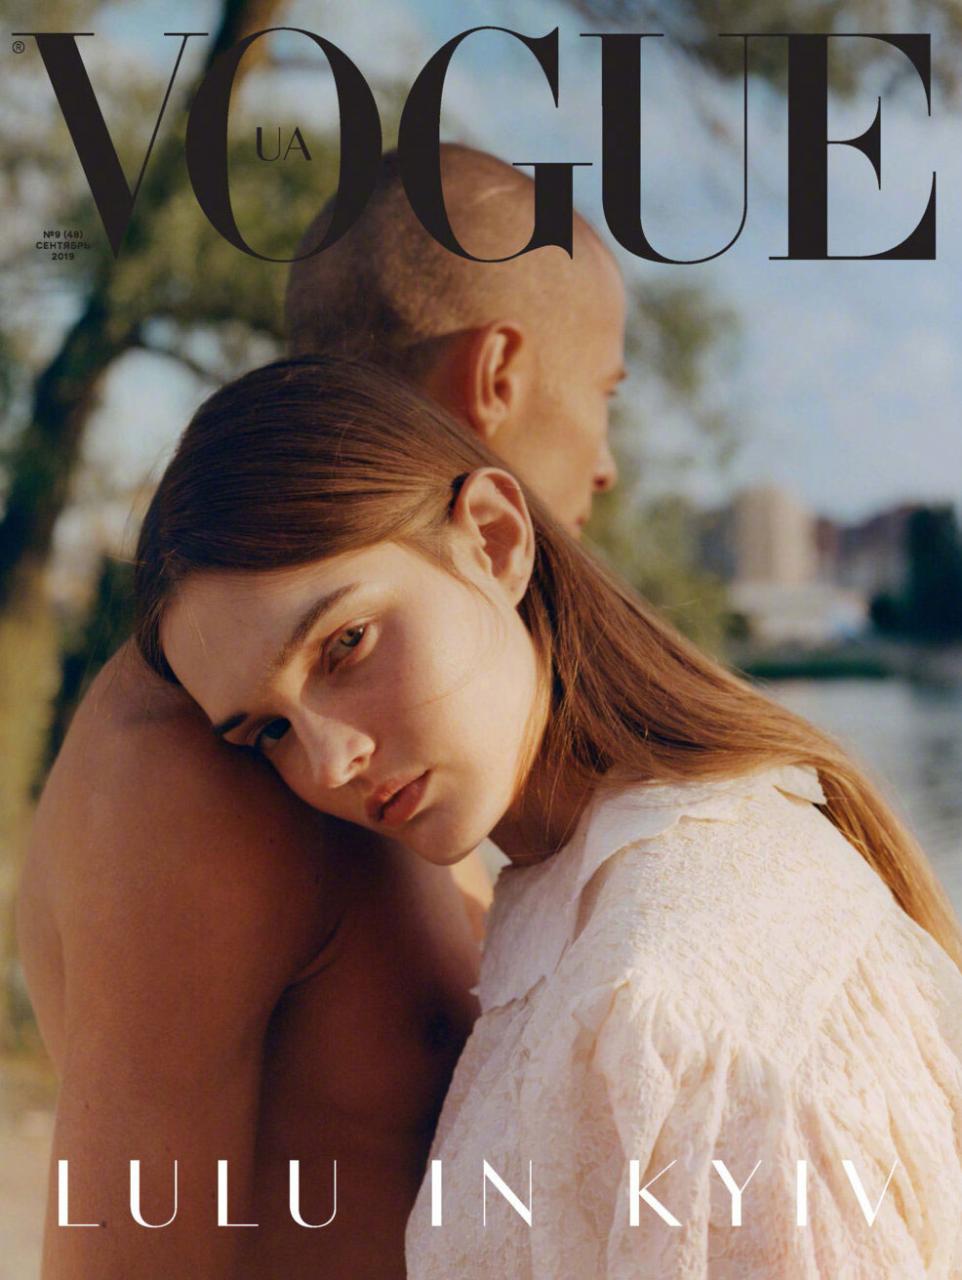 乌克兰版《Vogue》九月刊  经典的杂志色调 时尚图库 第2张